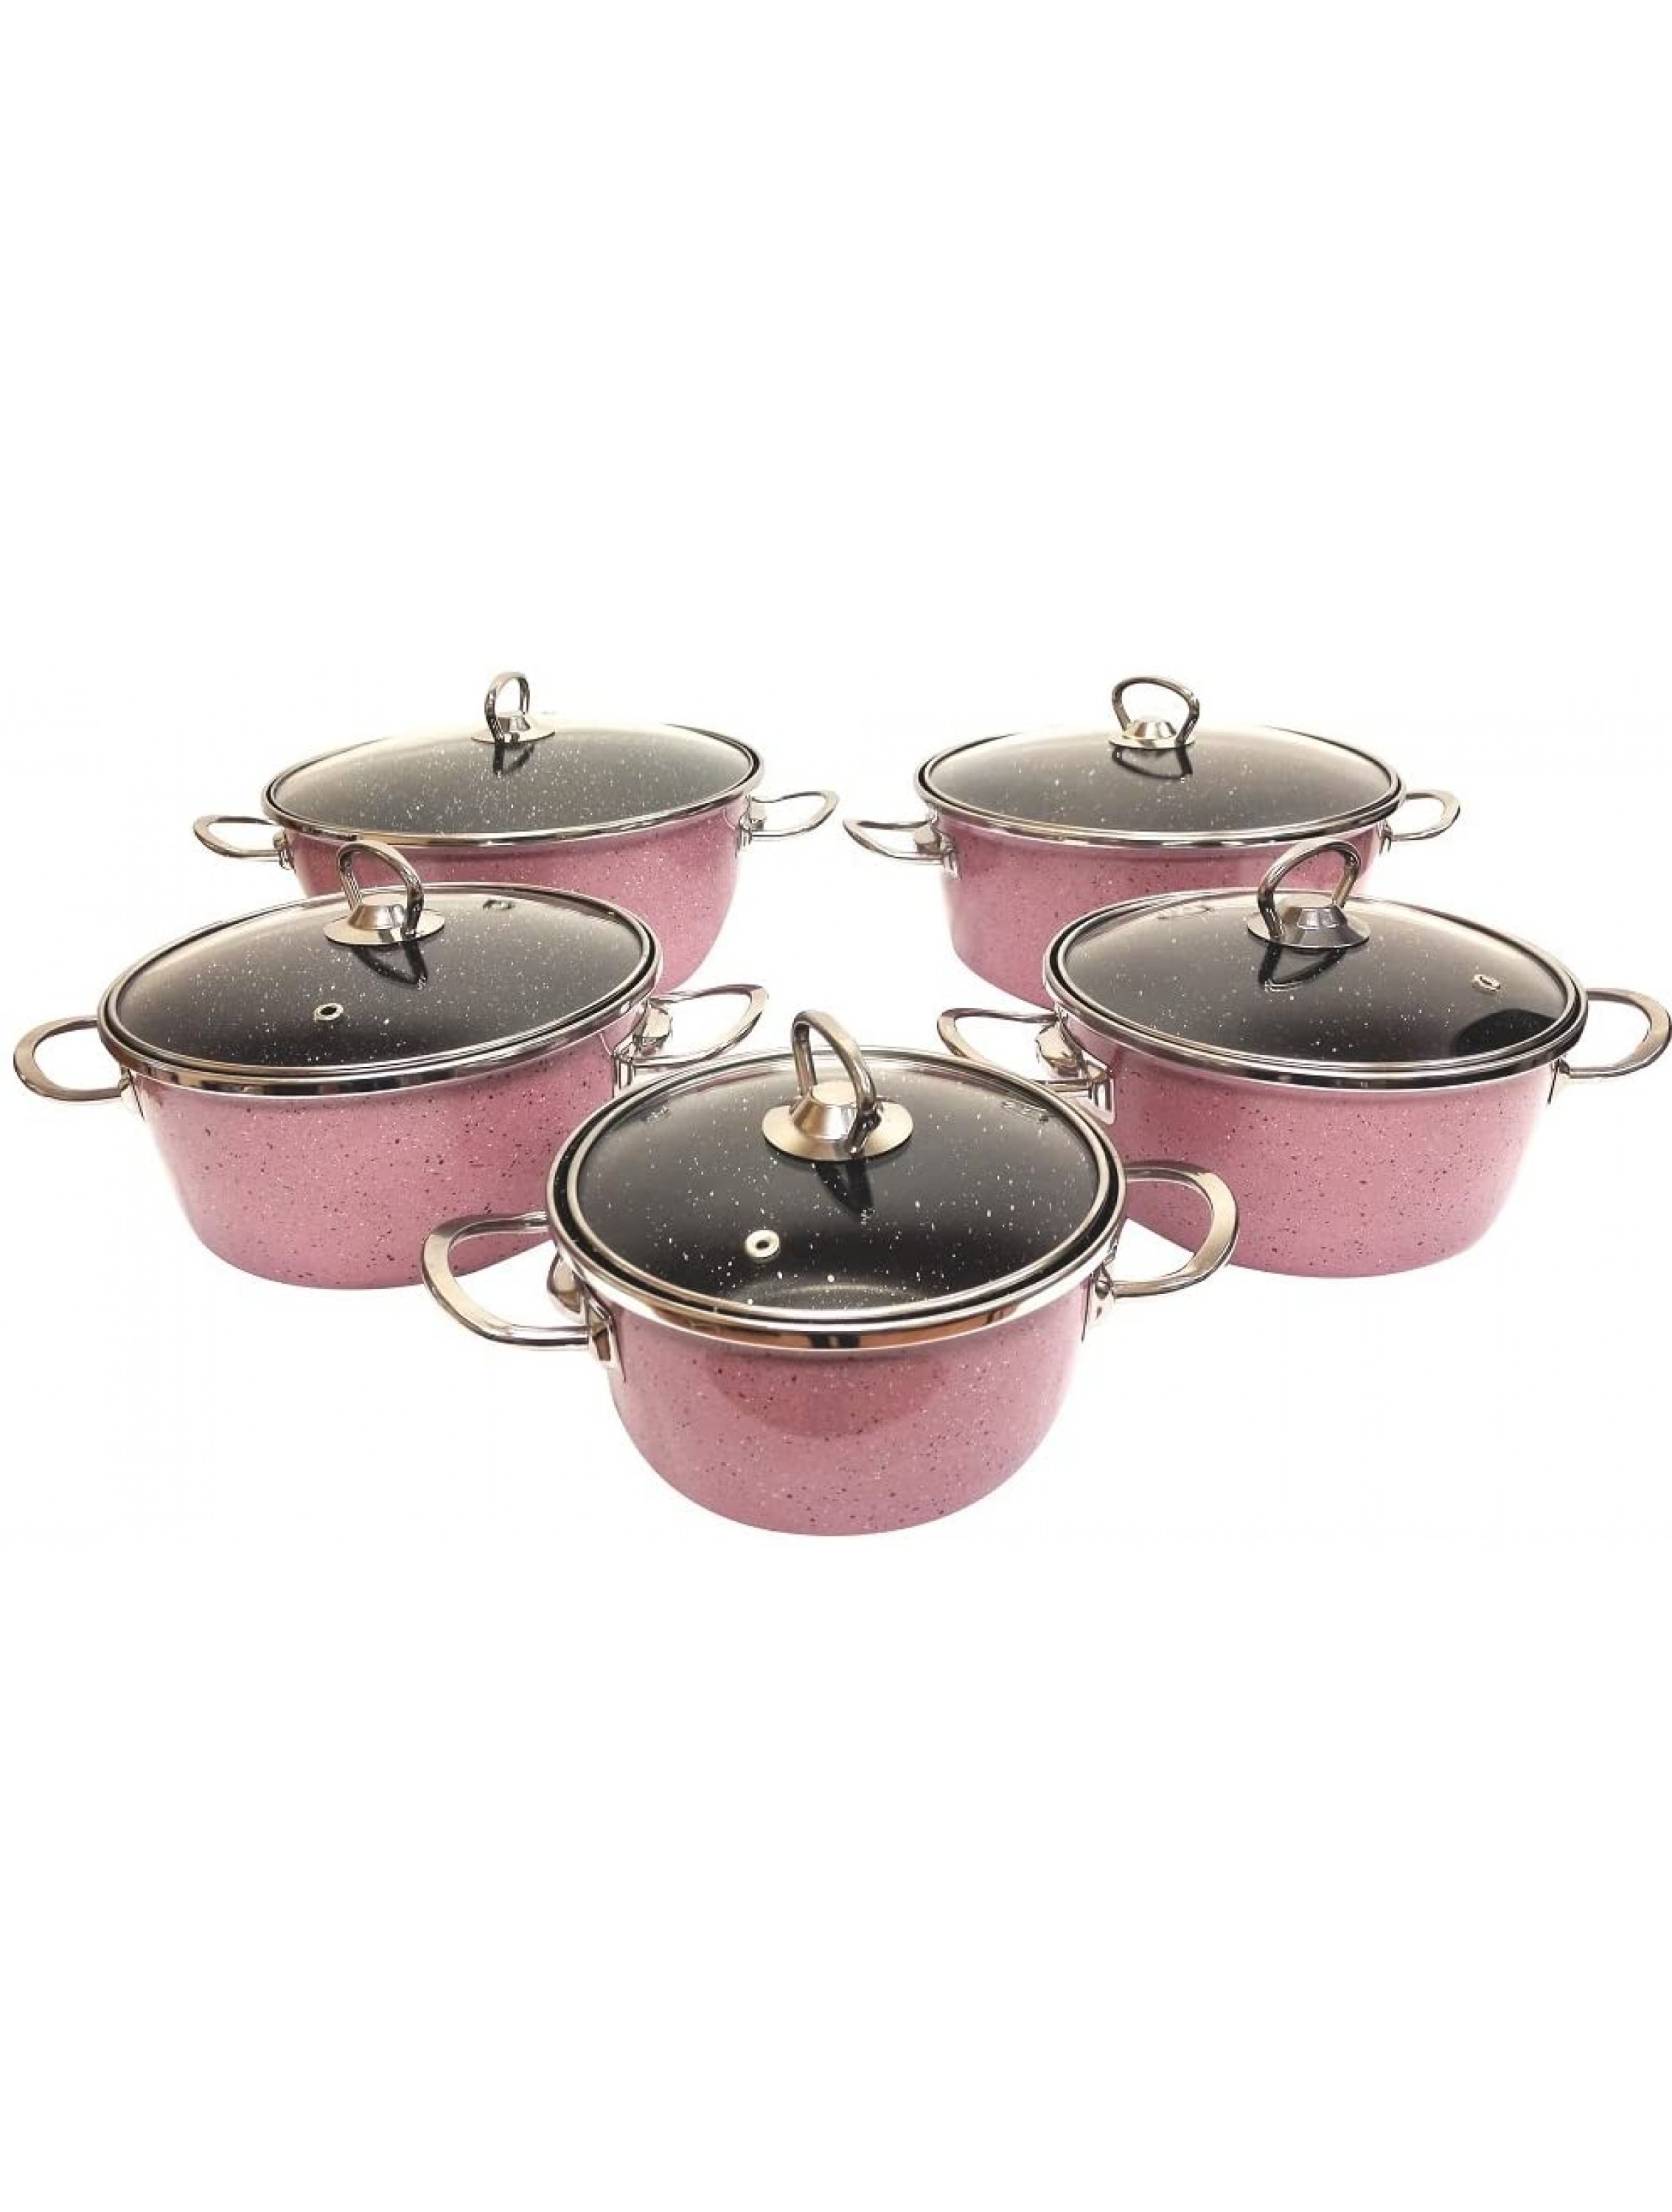 Uniware Super Quality Premium Enamel Cookware Set 10 Piece Set Pink - BHLVPLH4T